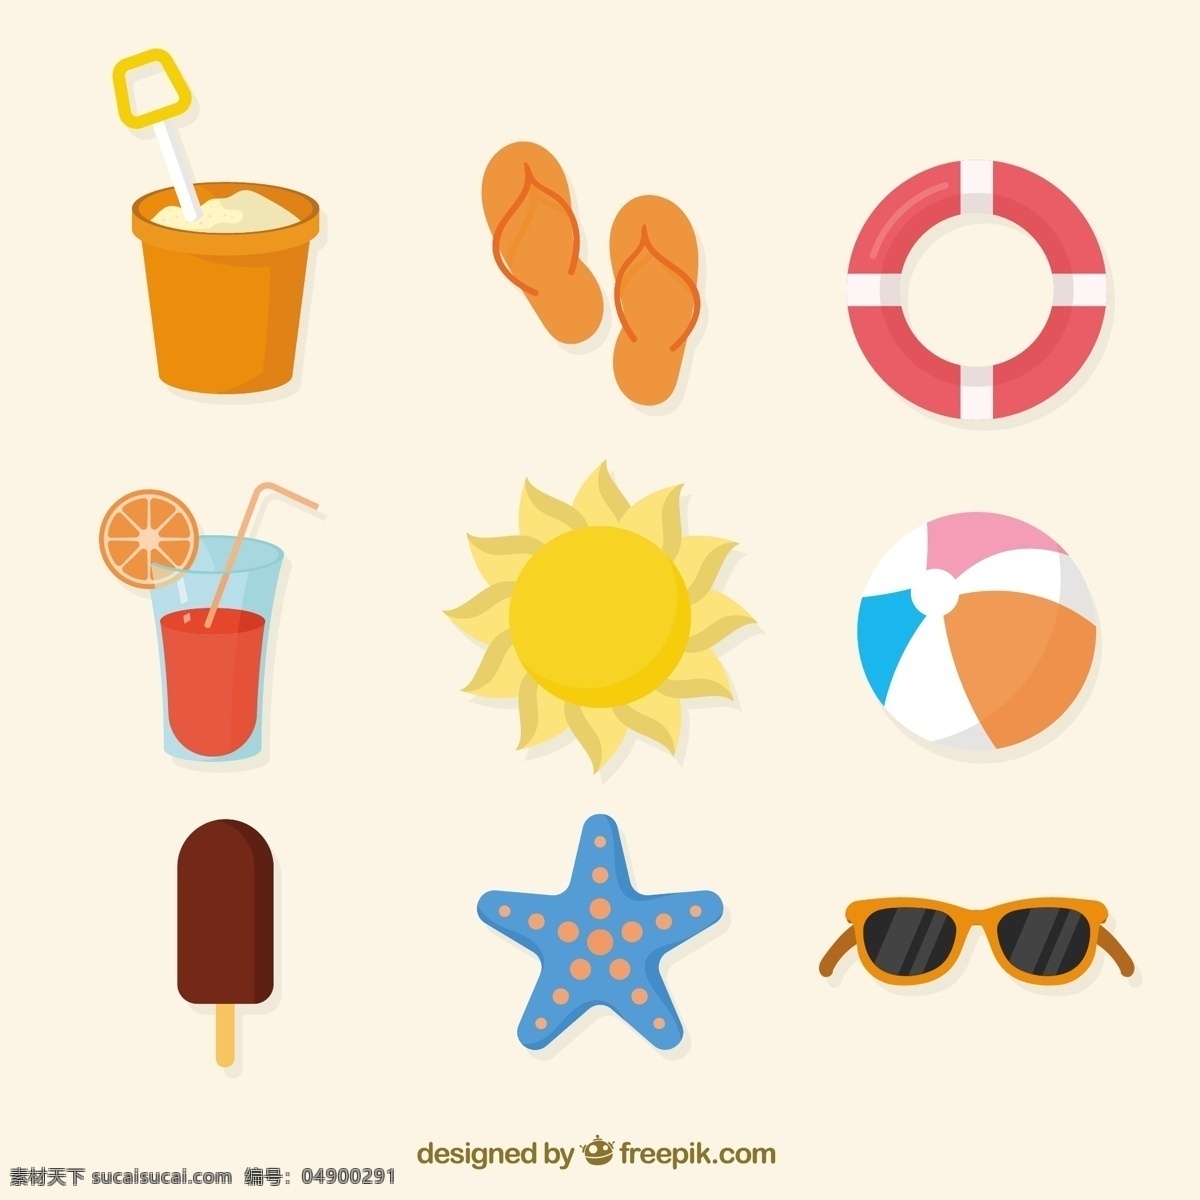 各种 彩色 夏天 物品 图标素材 彩色的 夏天物品